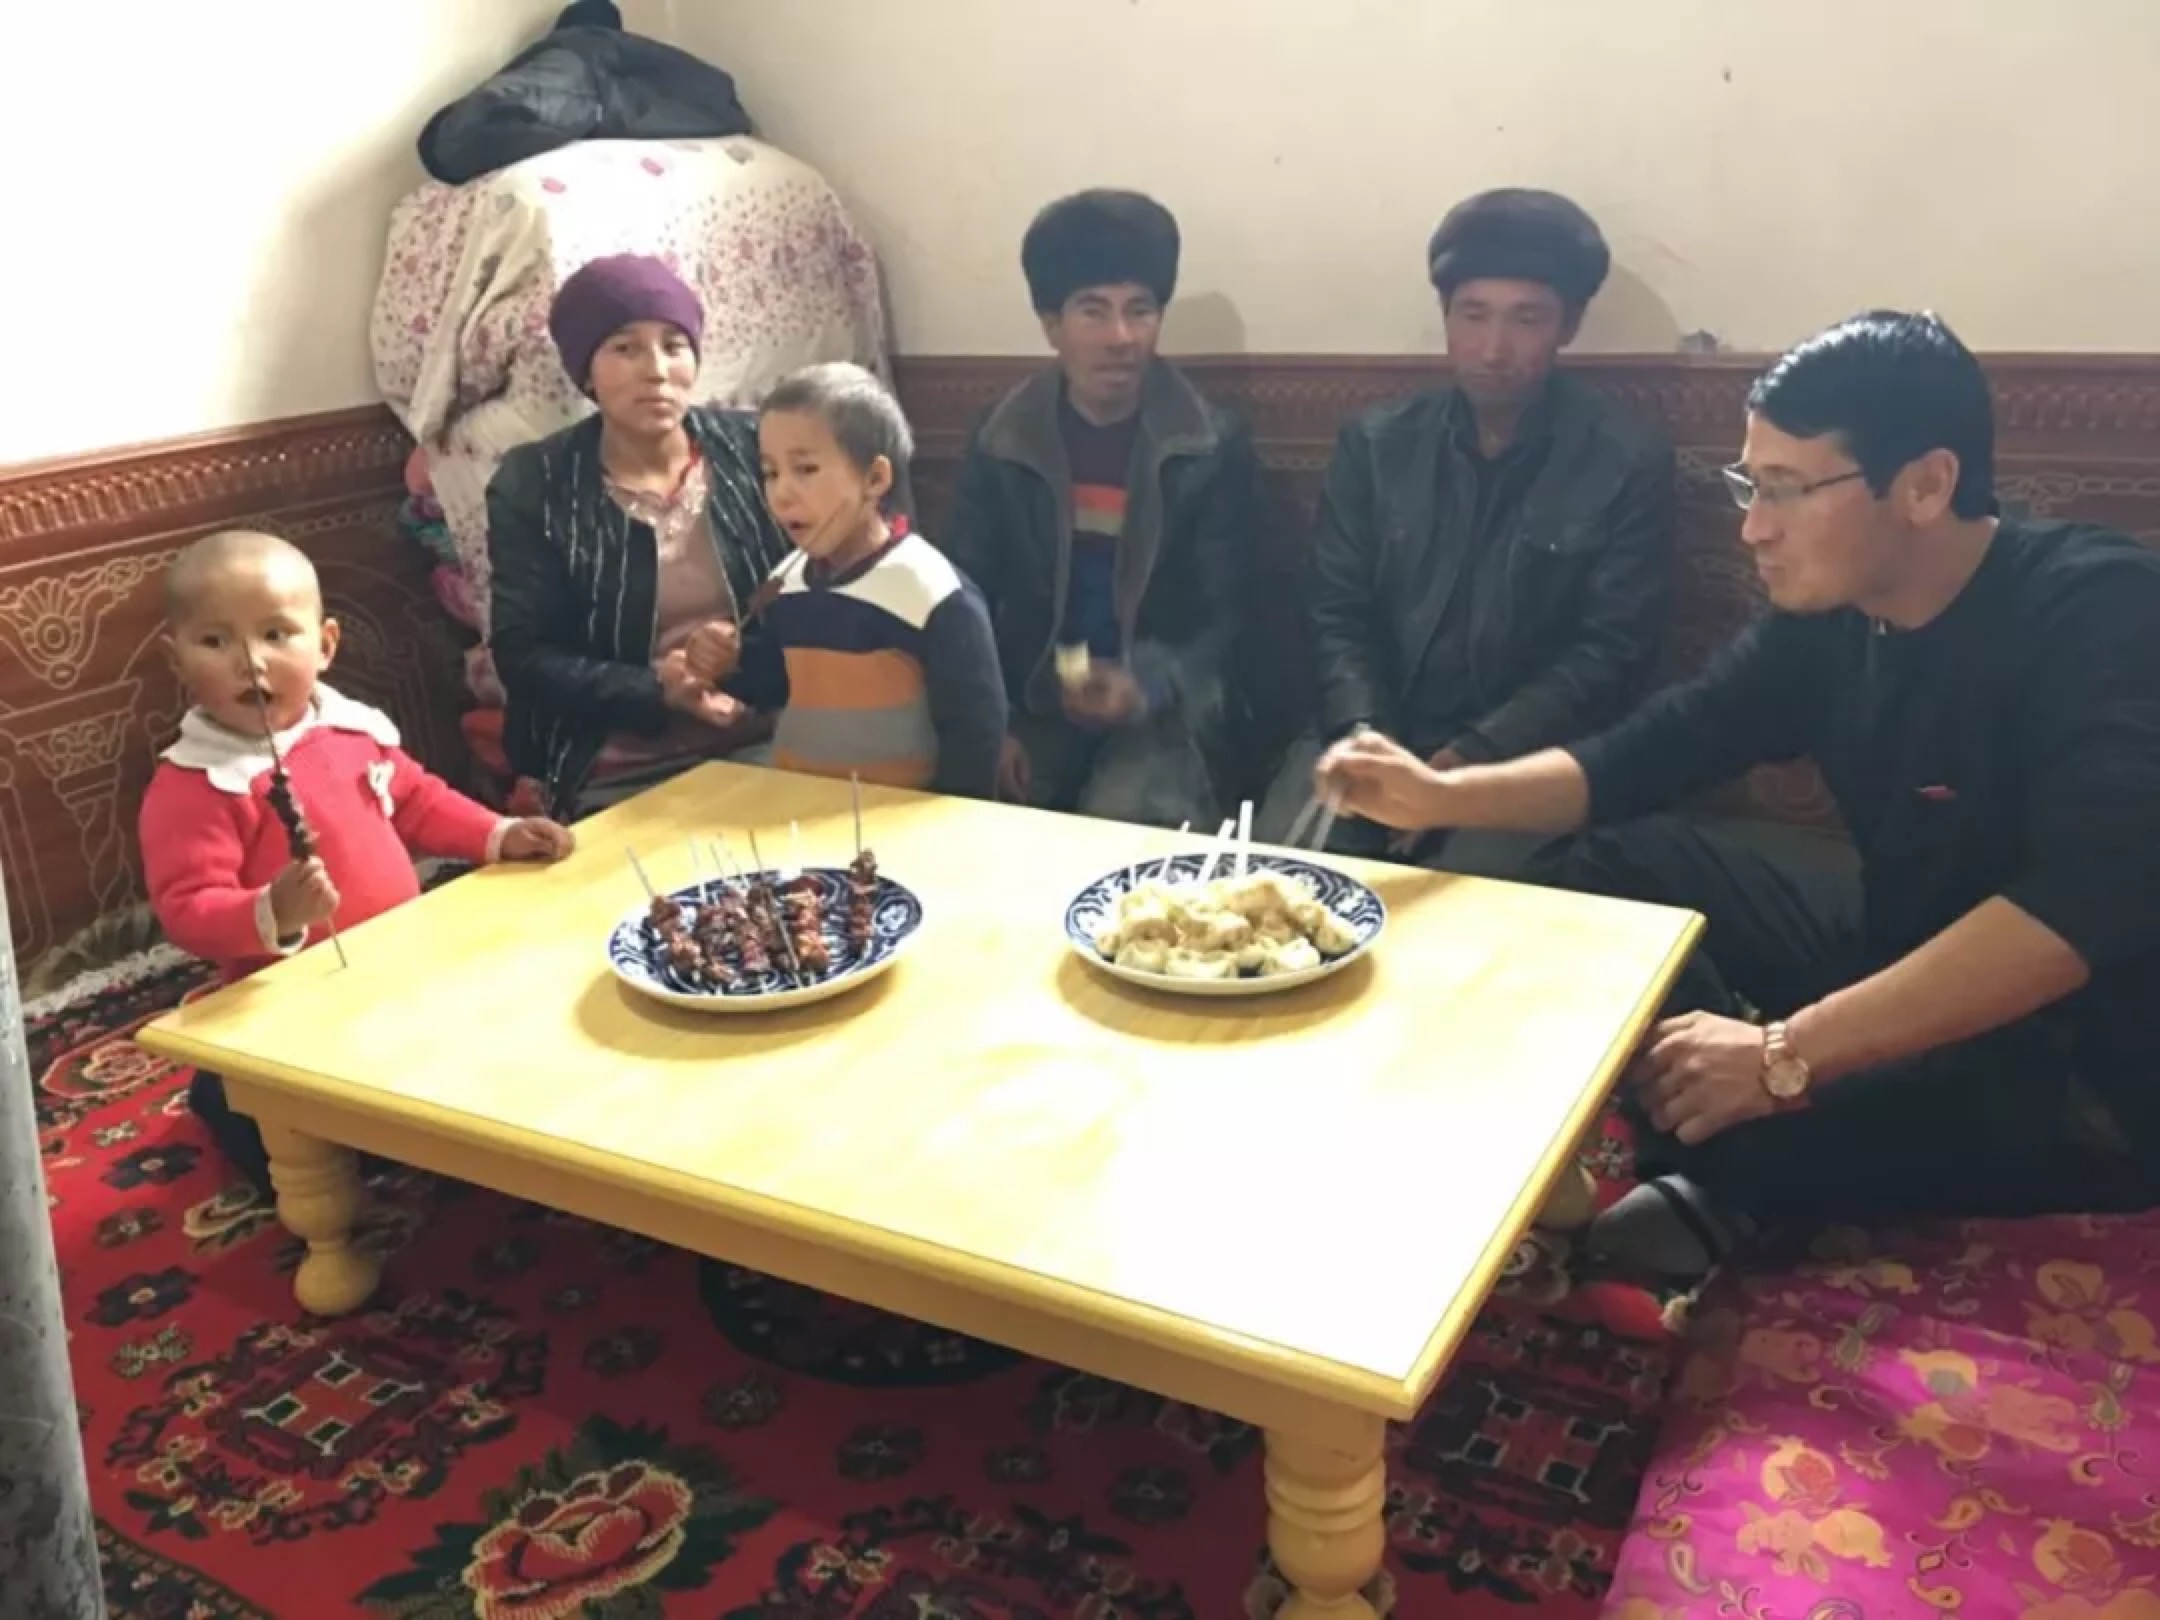 Xinjiang Communist Youth League—WeChat Ziyarete gönderilen bir Han memuru, onlara hediye olarak verdikleri bir masada Uygur ailesiyle birlikte yemek yiyor. Bu görüntü Sincan Komünist Gençlik Ligi tarafından sosyal medya platformu WeChat'ta yayınlandı.